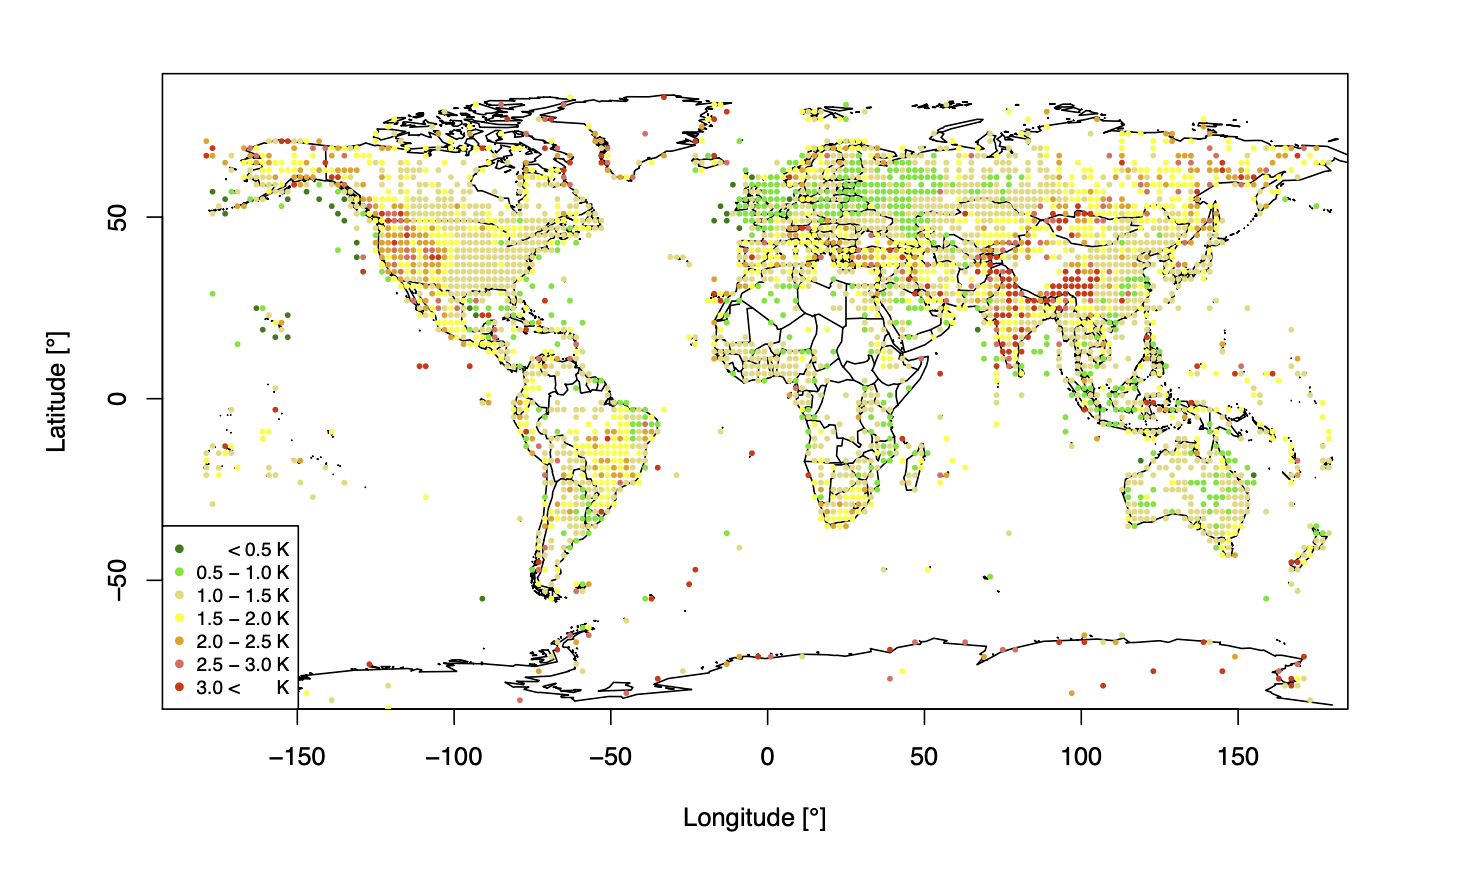 Räumliche Verteilung des MAE [K] für NEMS (oben) und ERA5 (unten), berechnet für stündliche Messungen des Jahres 2018 von über 8000 Wetterstationen weltweit.